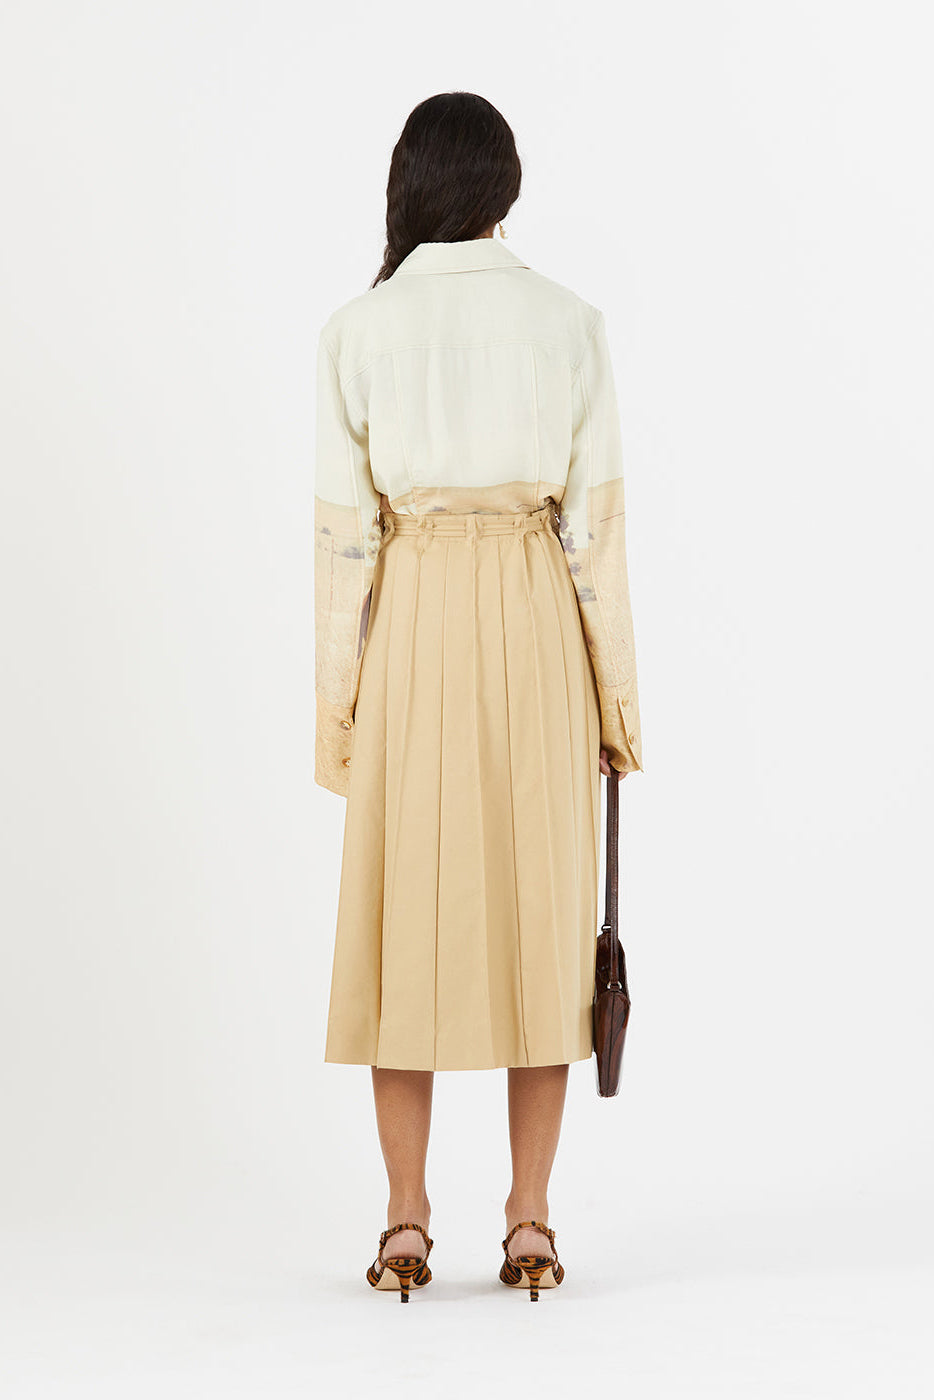 Noor Skirt in Tan by Rejina Pyo 